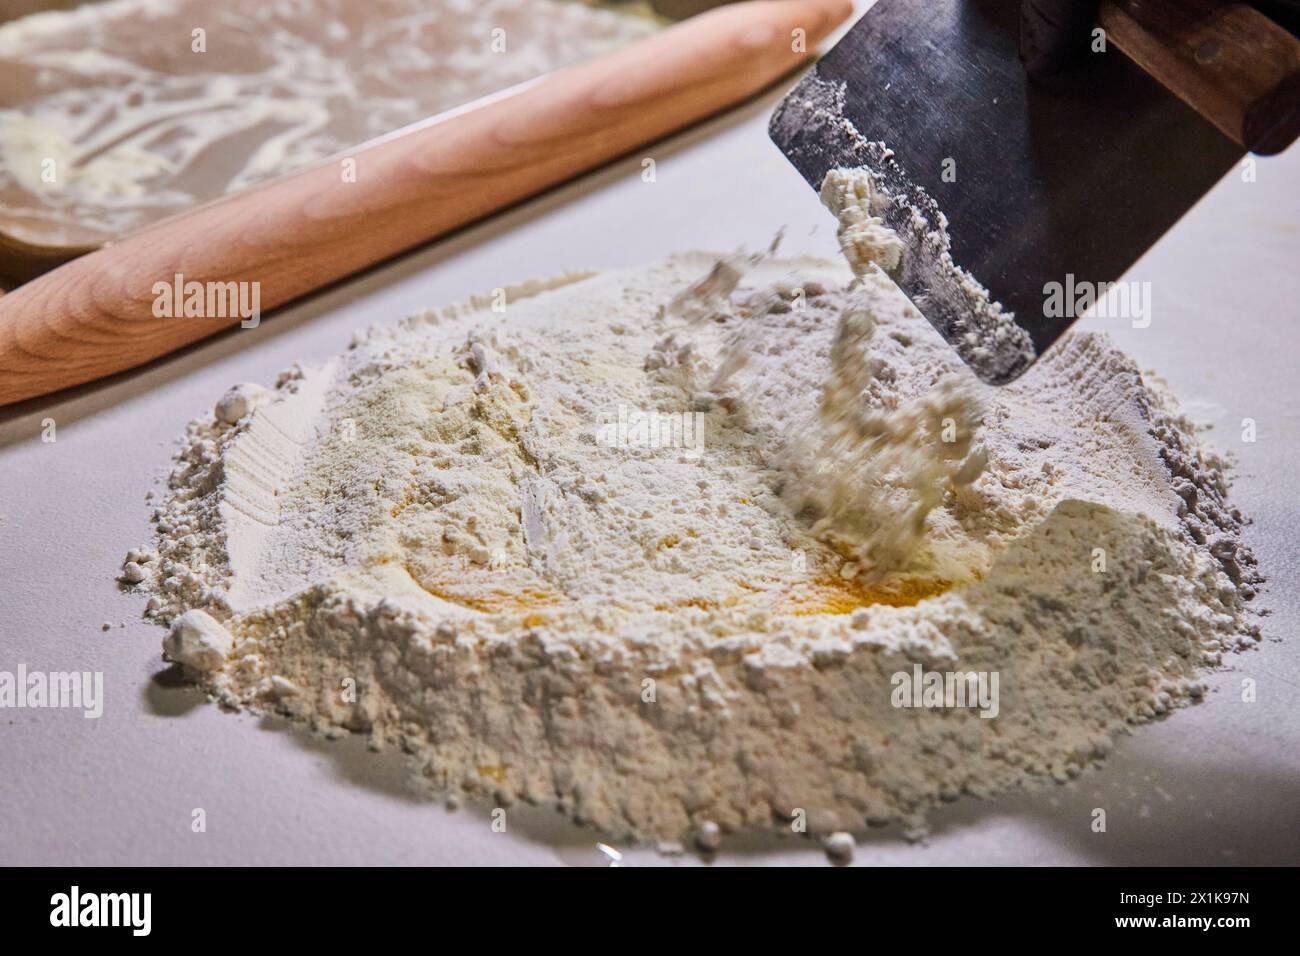 Preparación de pasta artesanal con huevo y harina, primer plano de rascador de masa Foto de stock